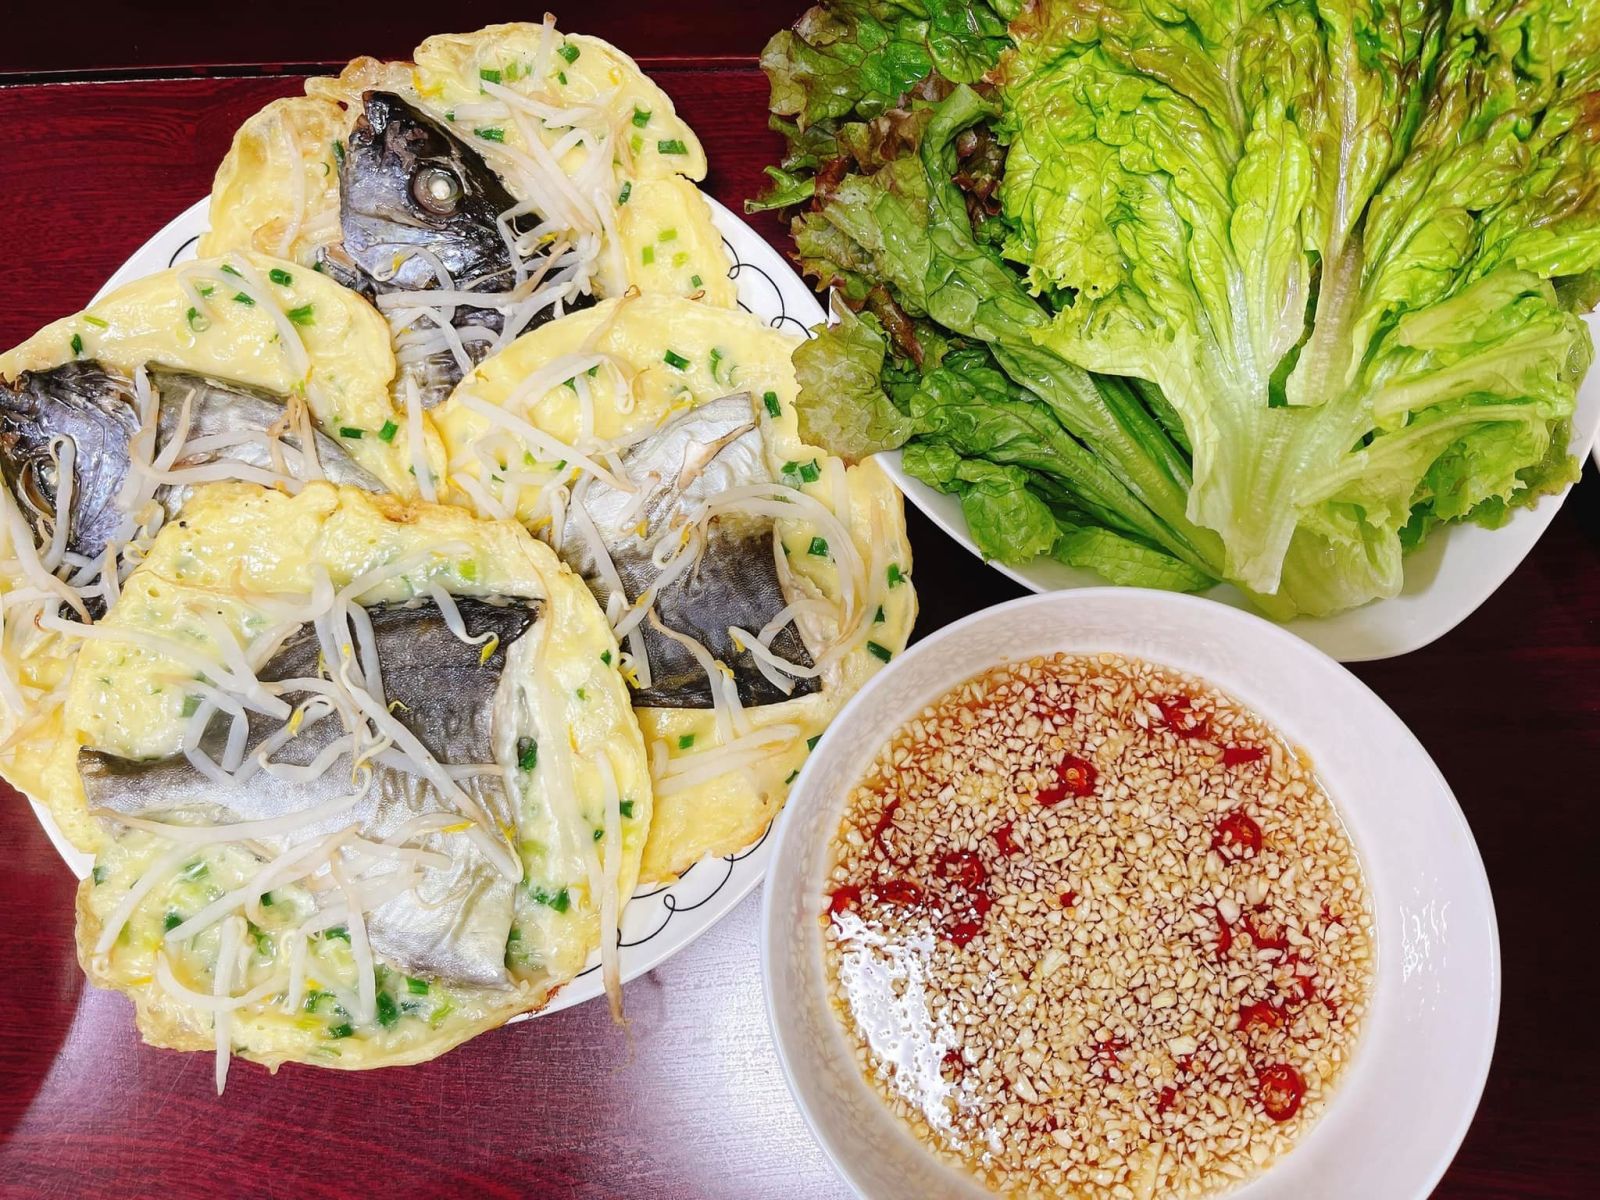  Bánh khoái cá kình là món ăn dân dã có nguồn gốc từ chợ làng Chuồn - khu chợ truyền thống của làng An Truyền, xã Phú An, huyện Phú Vang, Thừa Thiên - Huế (Ảnh: Nhi Hoàng).